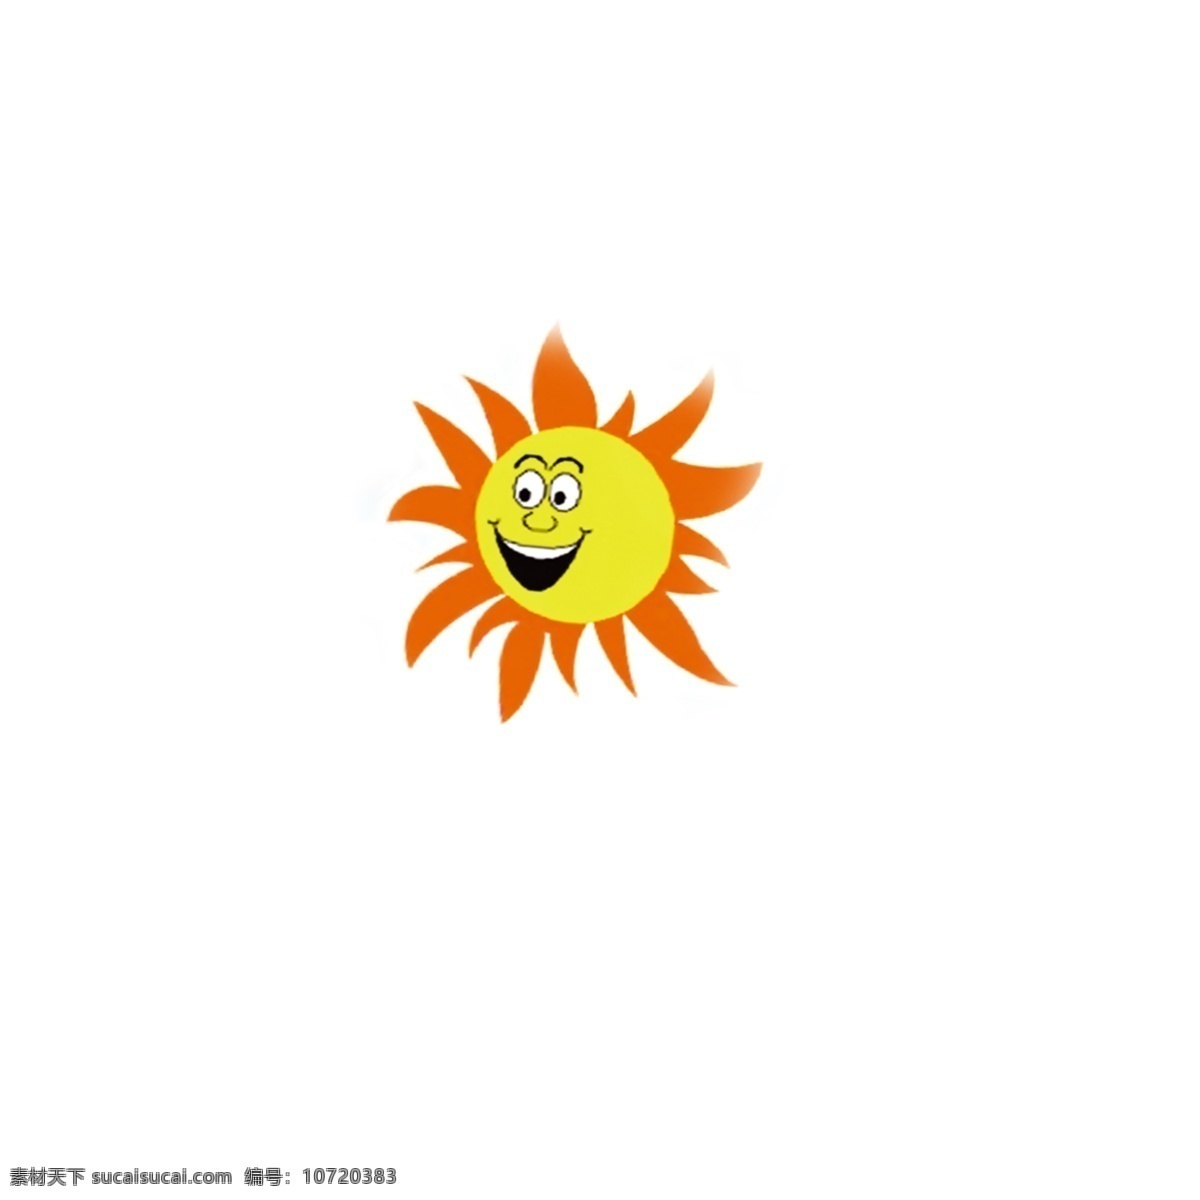 卡通太阳 卡通 可爱 太阳 黄色 笑脸